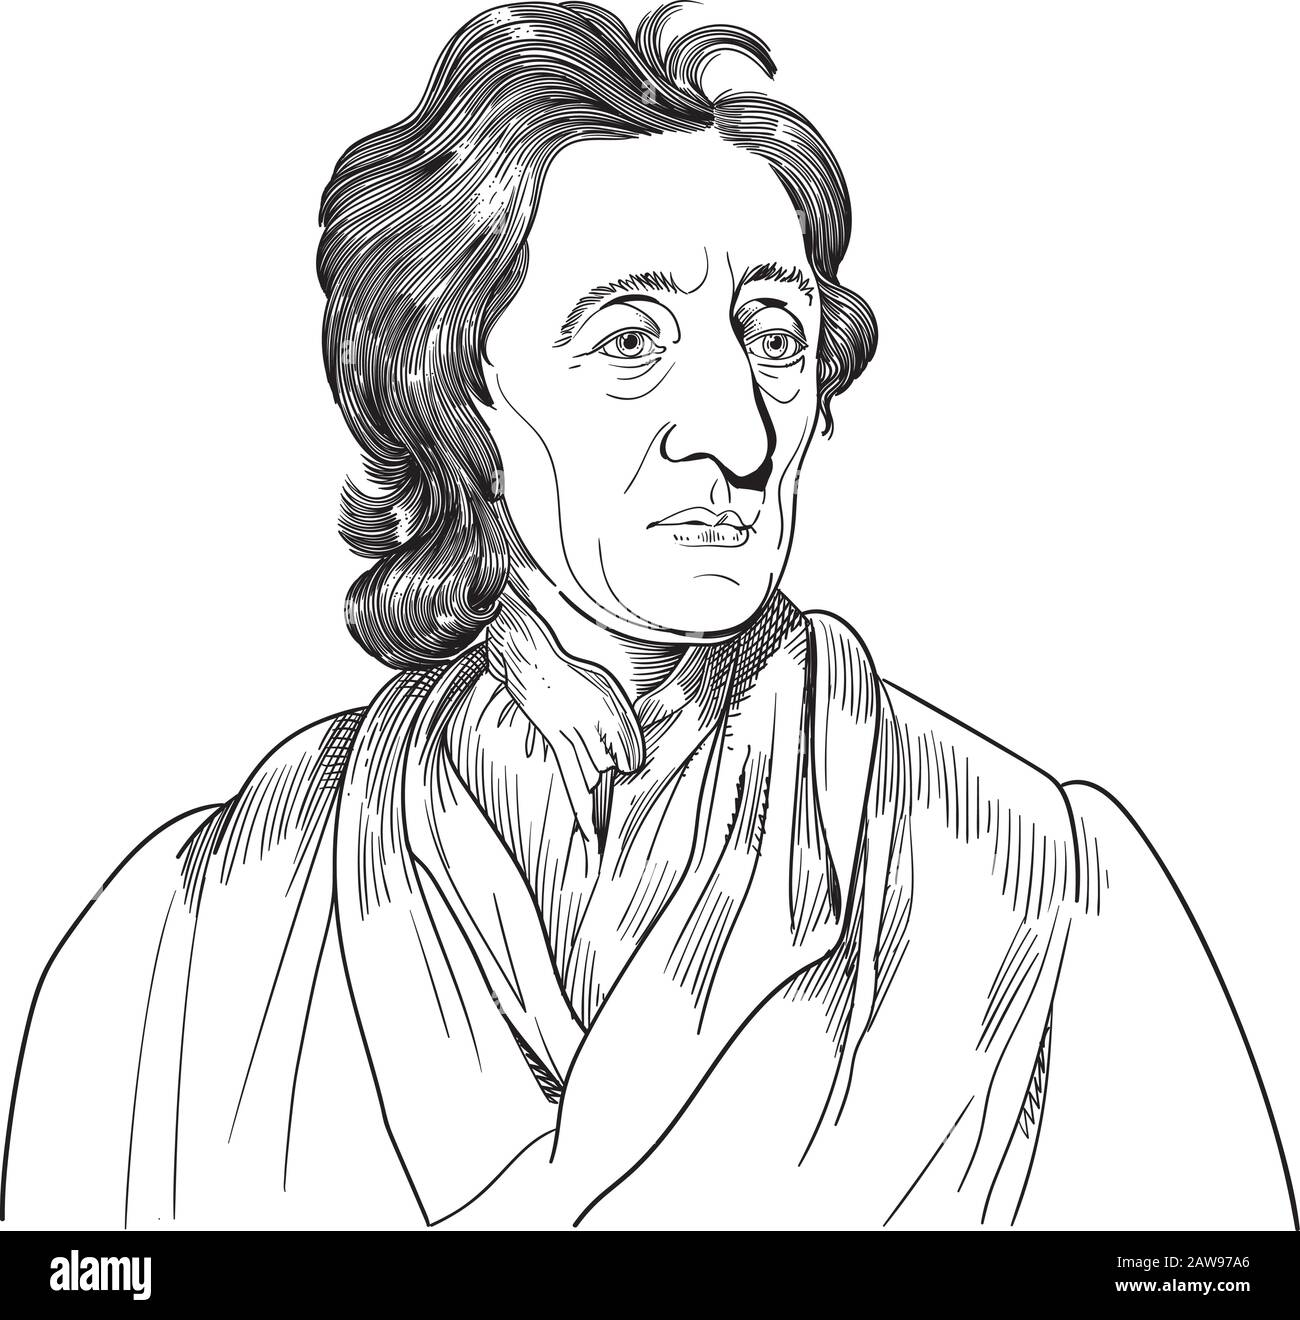 John Locke, connu sous le nom de Père du libéralisme, était philosophe et médecin anglais. L'illustration théoriesde Locke, le dessin, l'esquisse, la prise étaient u Illustration de Vecteur